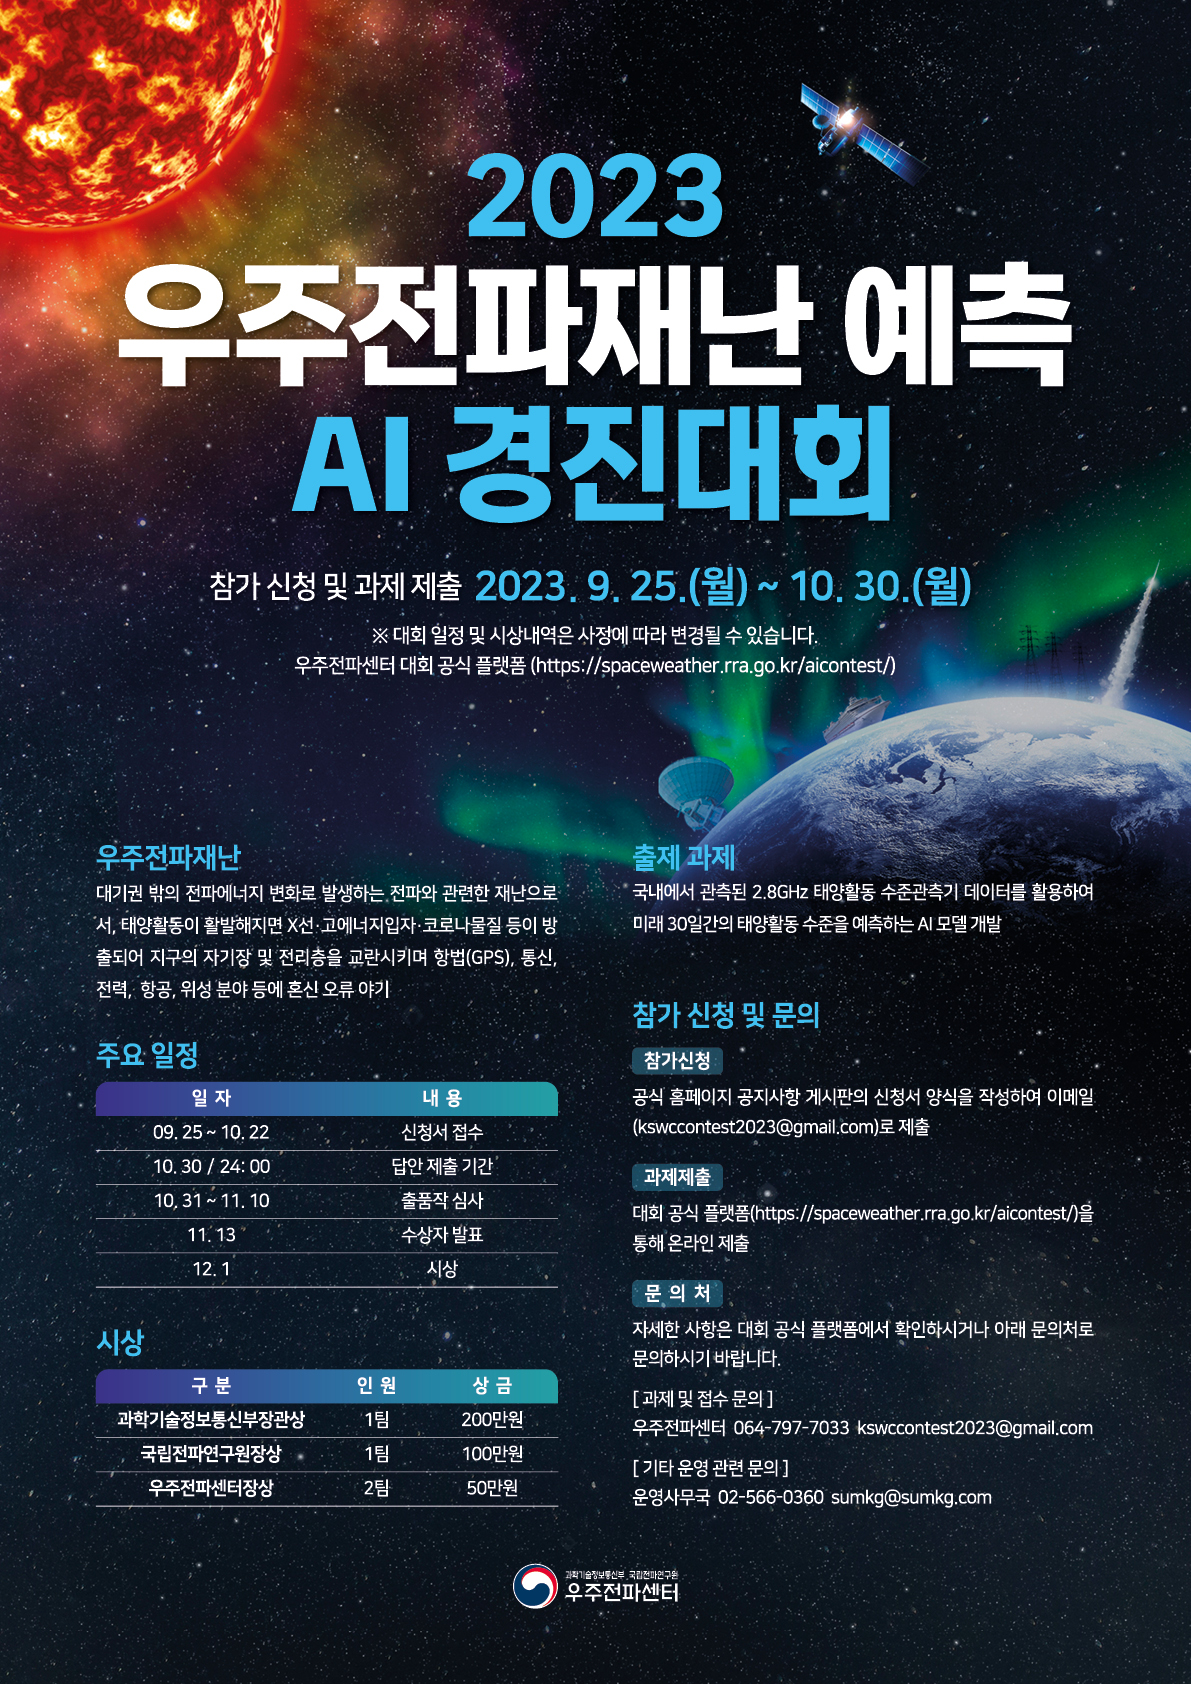 「2023년 우주전파재난 예측 AI 경진대회」개최 